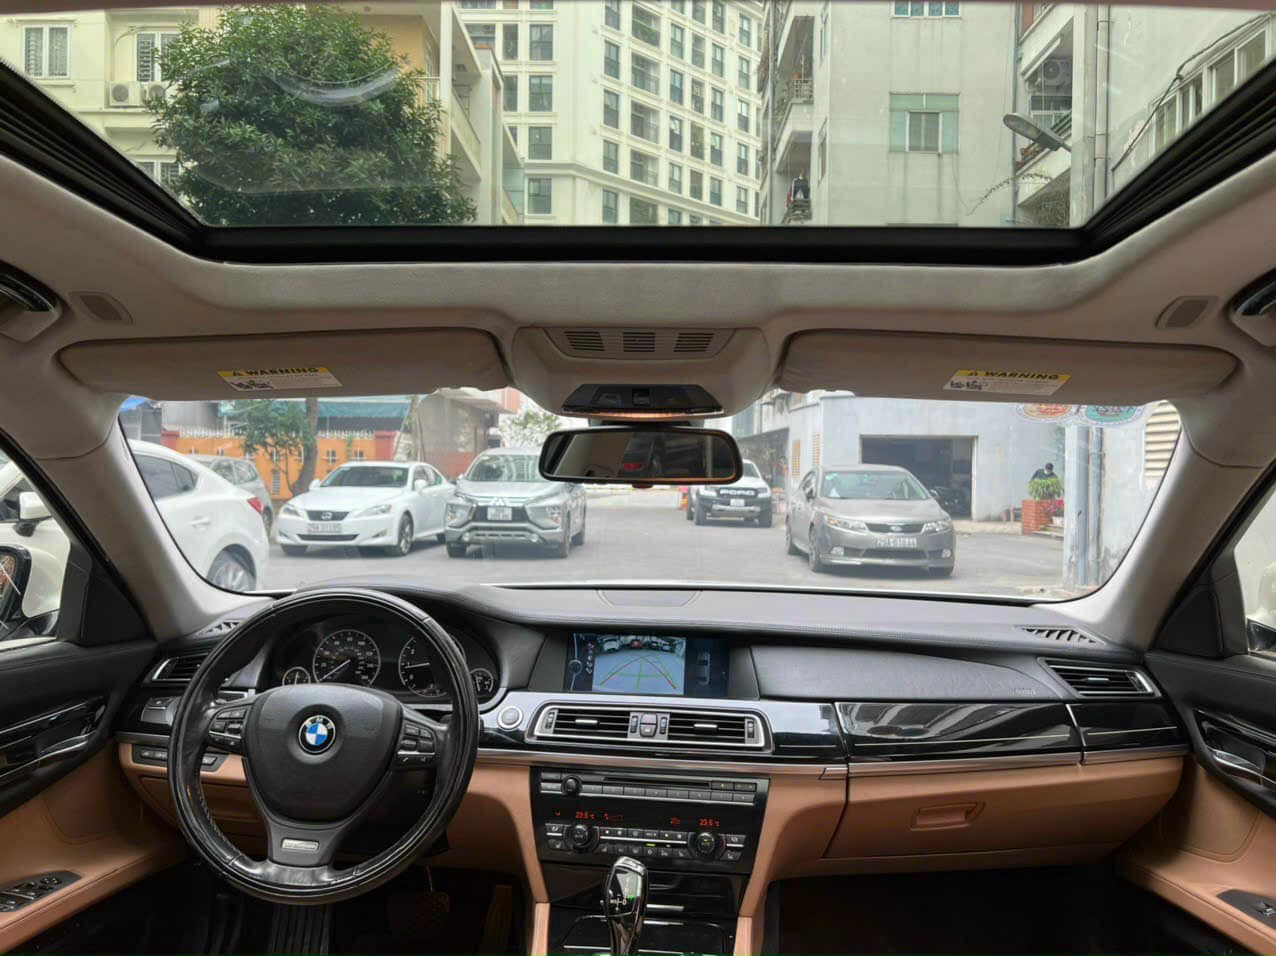 BMW 750Li rao bán ngang giá Vios 2023: Chủ xe thổ lộ 'không đăng kiểm được' nên quyết định bán - Ảnh 3.